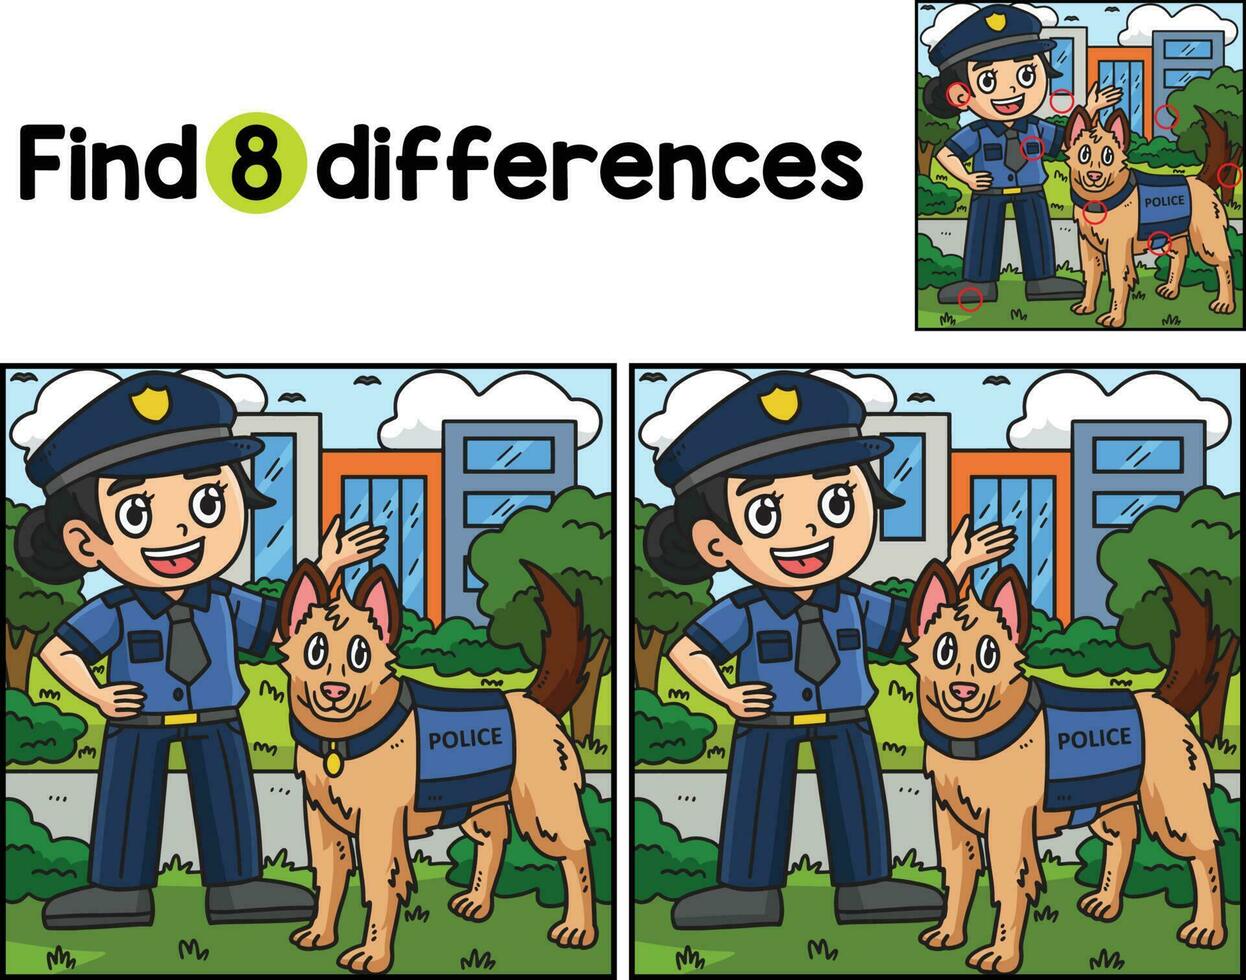 policía oficiales policía perro encontrar el diferencias vector